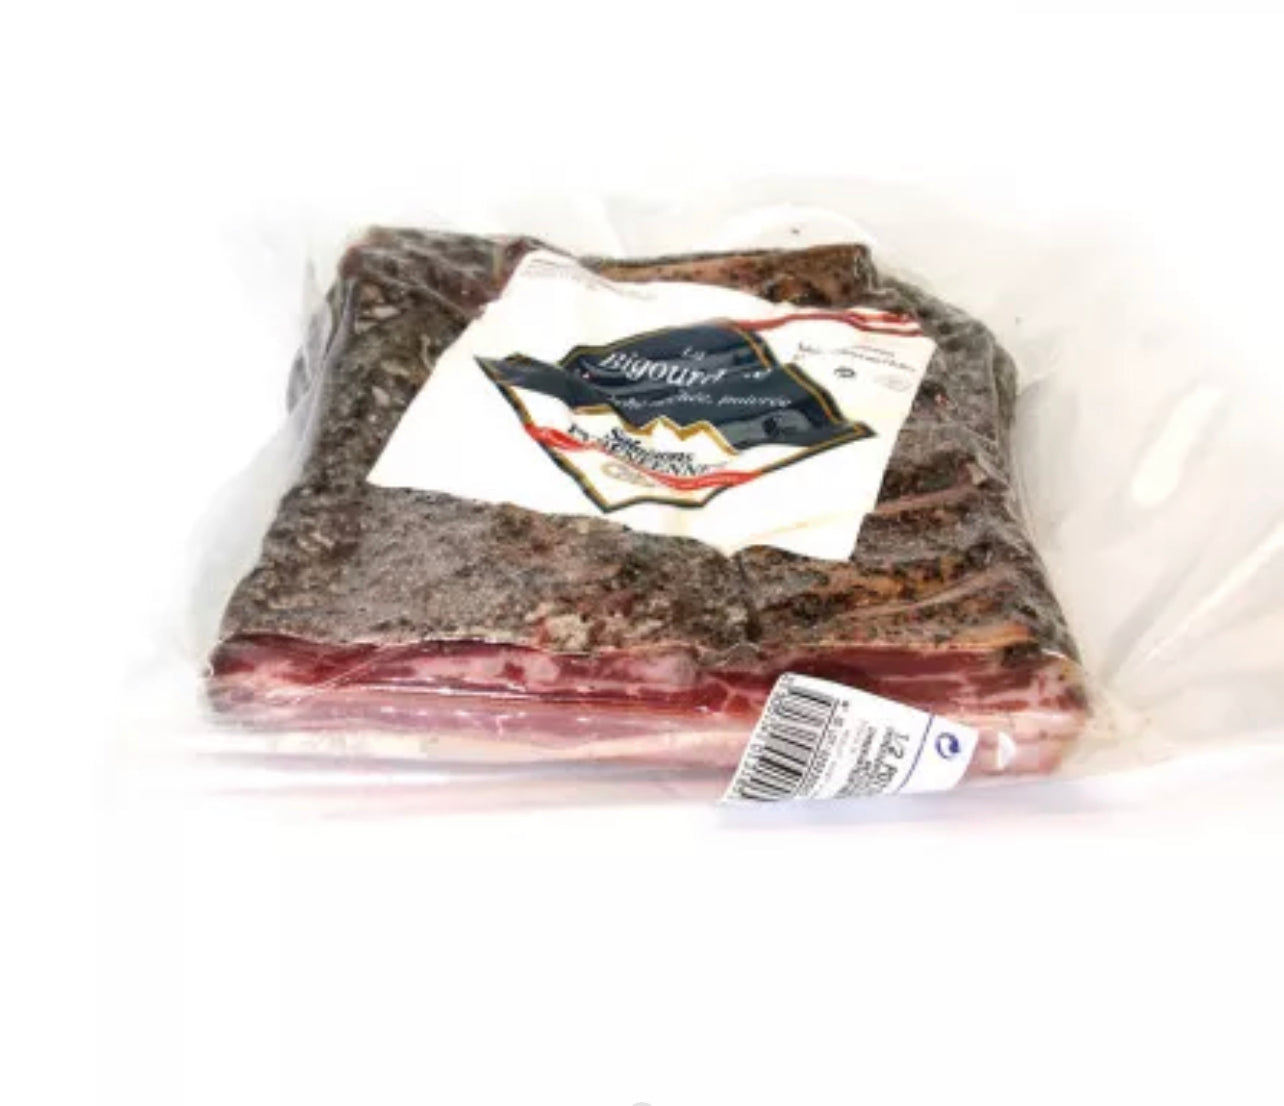 Media panceta de cerdo “La Bigourdane” ±1,4kg